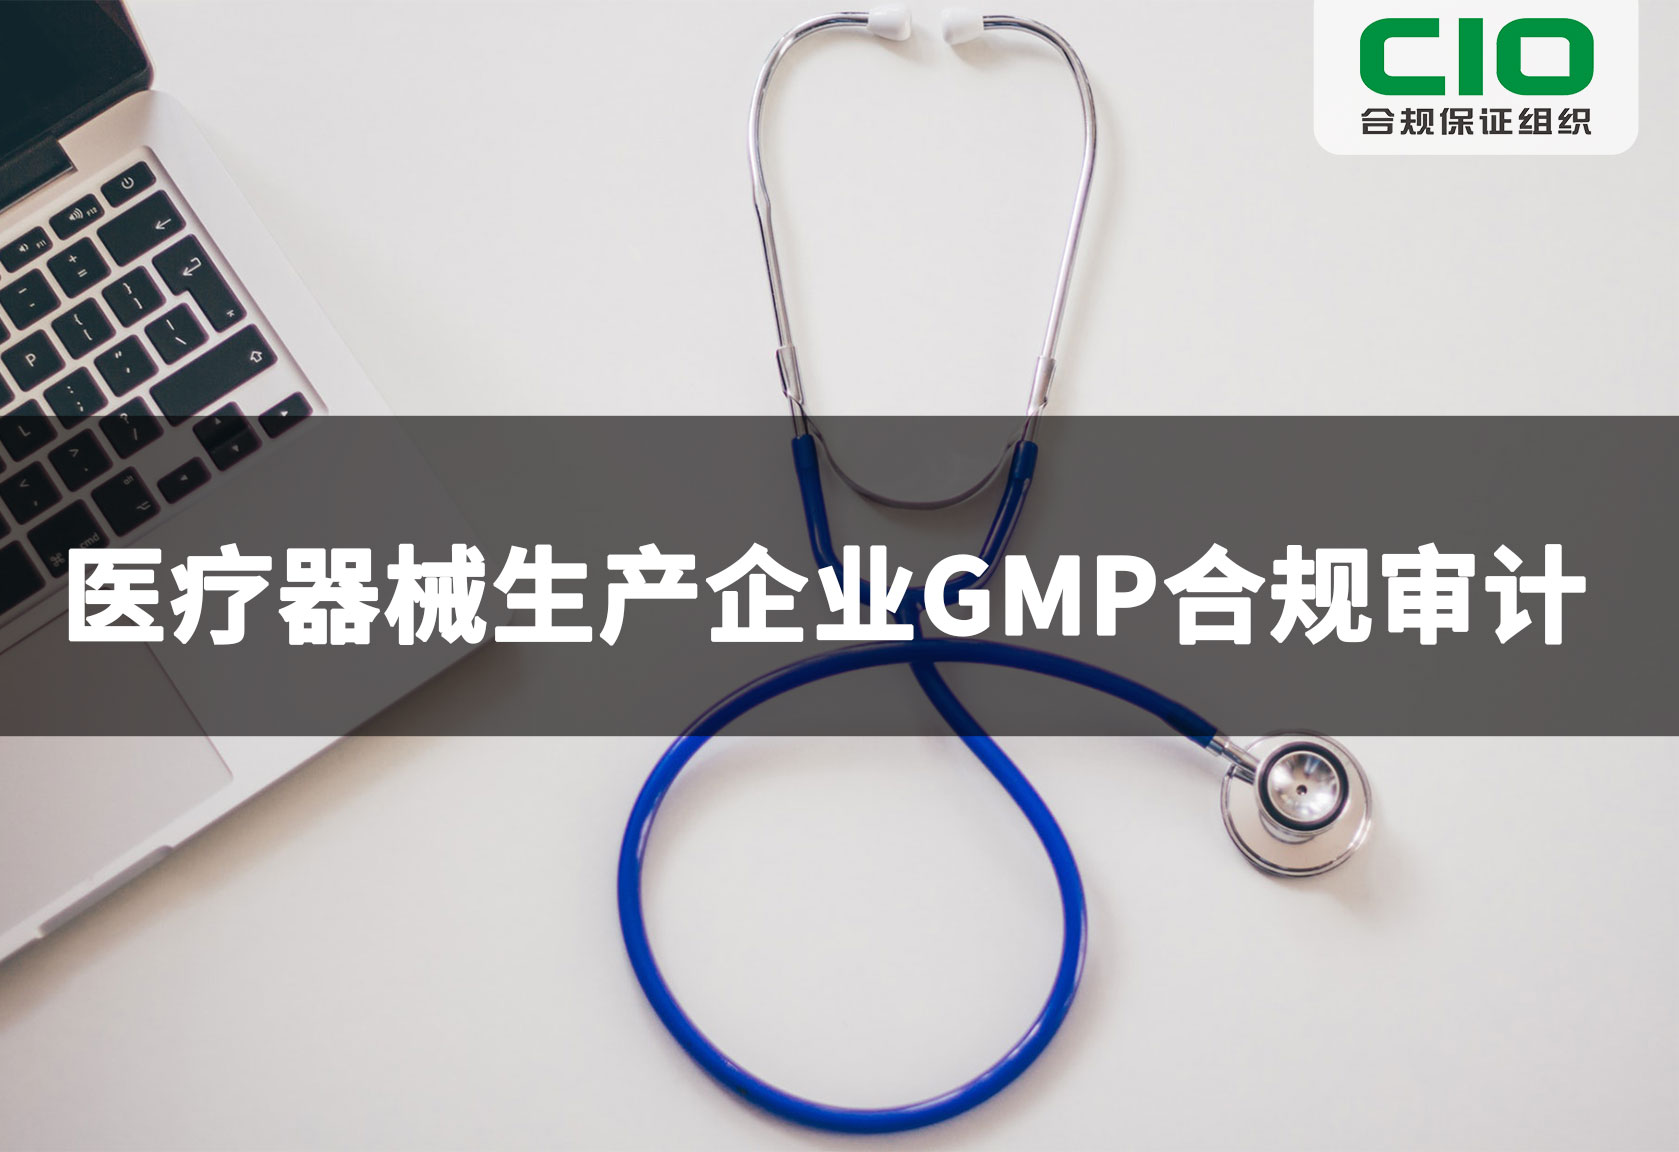 医疗器械生产企业GMP合规审计